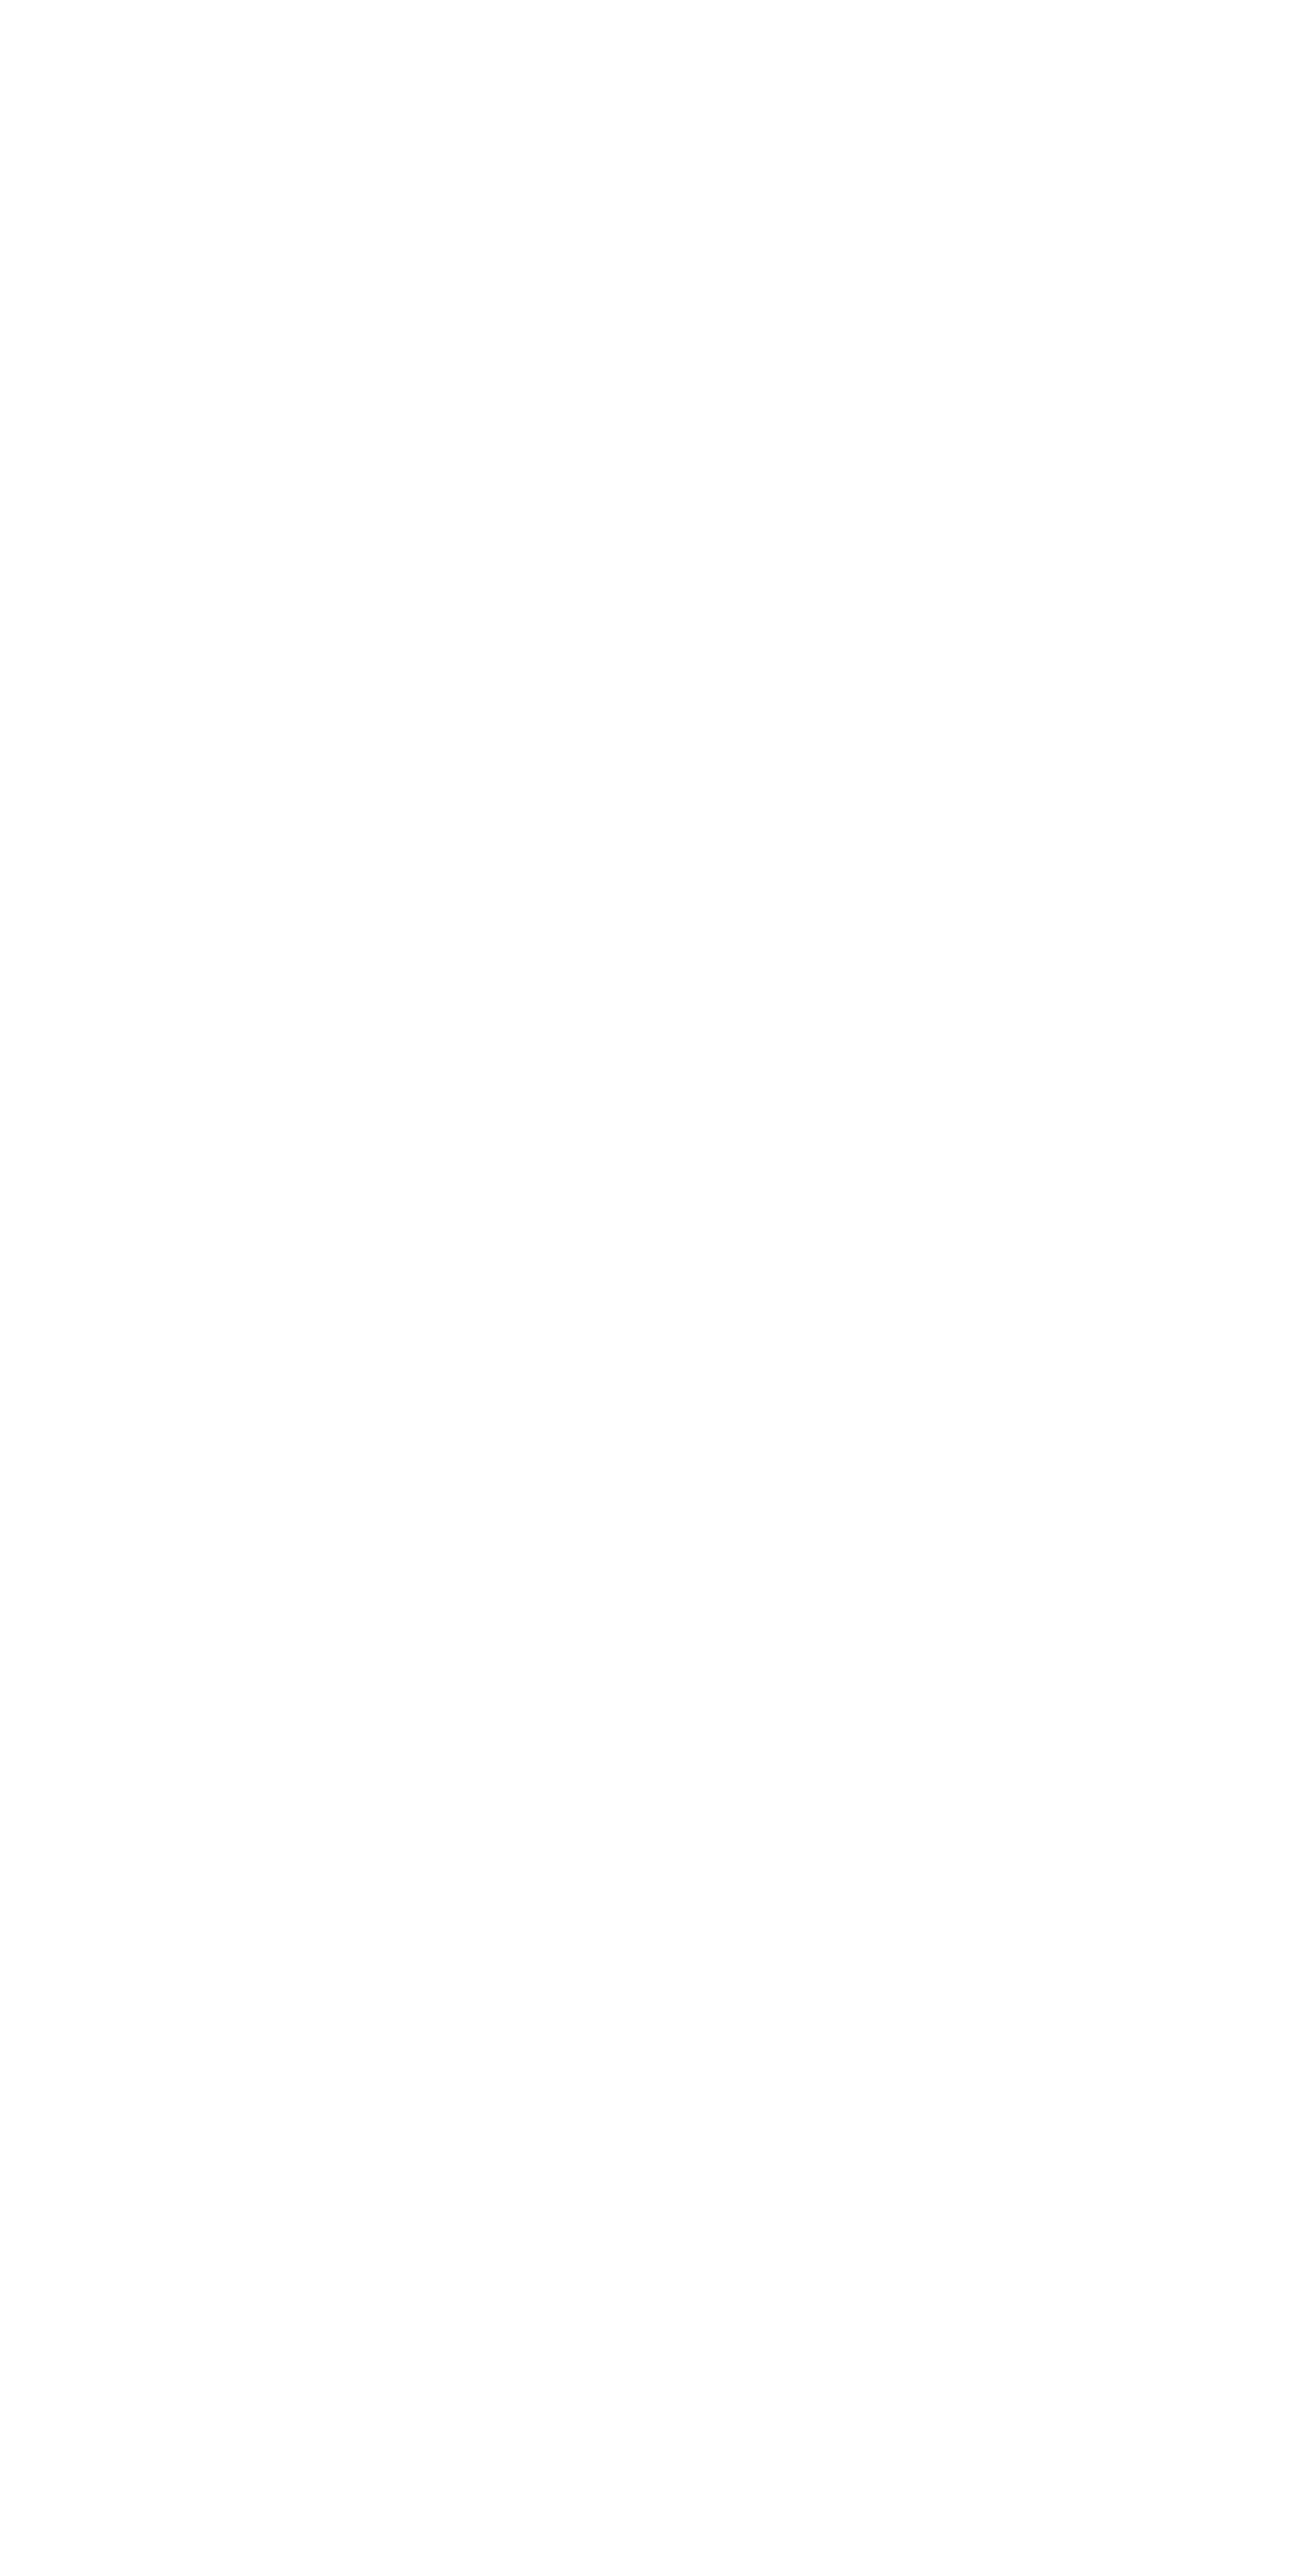 Das Dashboard, der Nui-App. Am linken Rand in der Mitte ist der Punkt "Pflegeanträge stellen" mit einem pinken Kreis markiert.